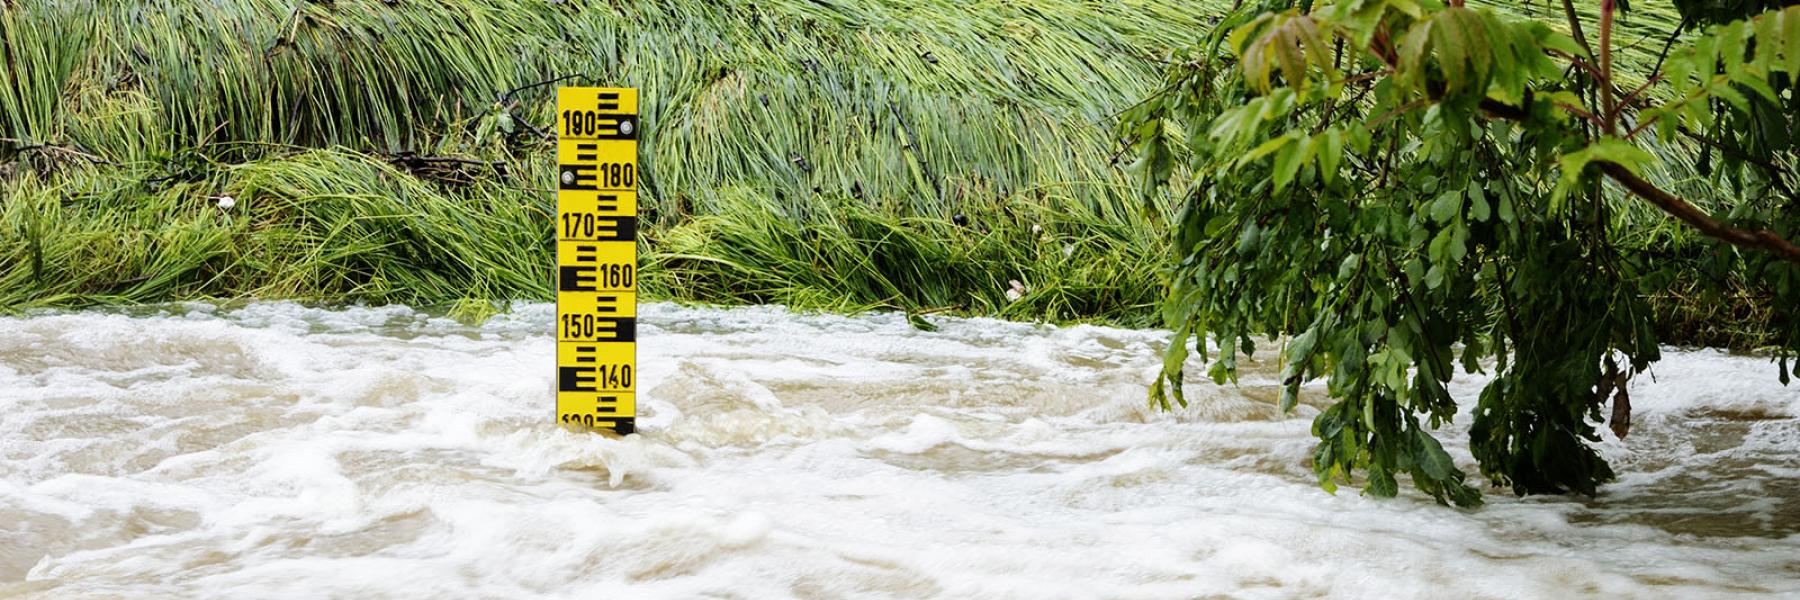 Sensorer advarer mod oversvømmelse